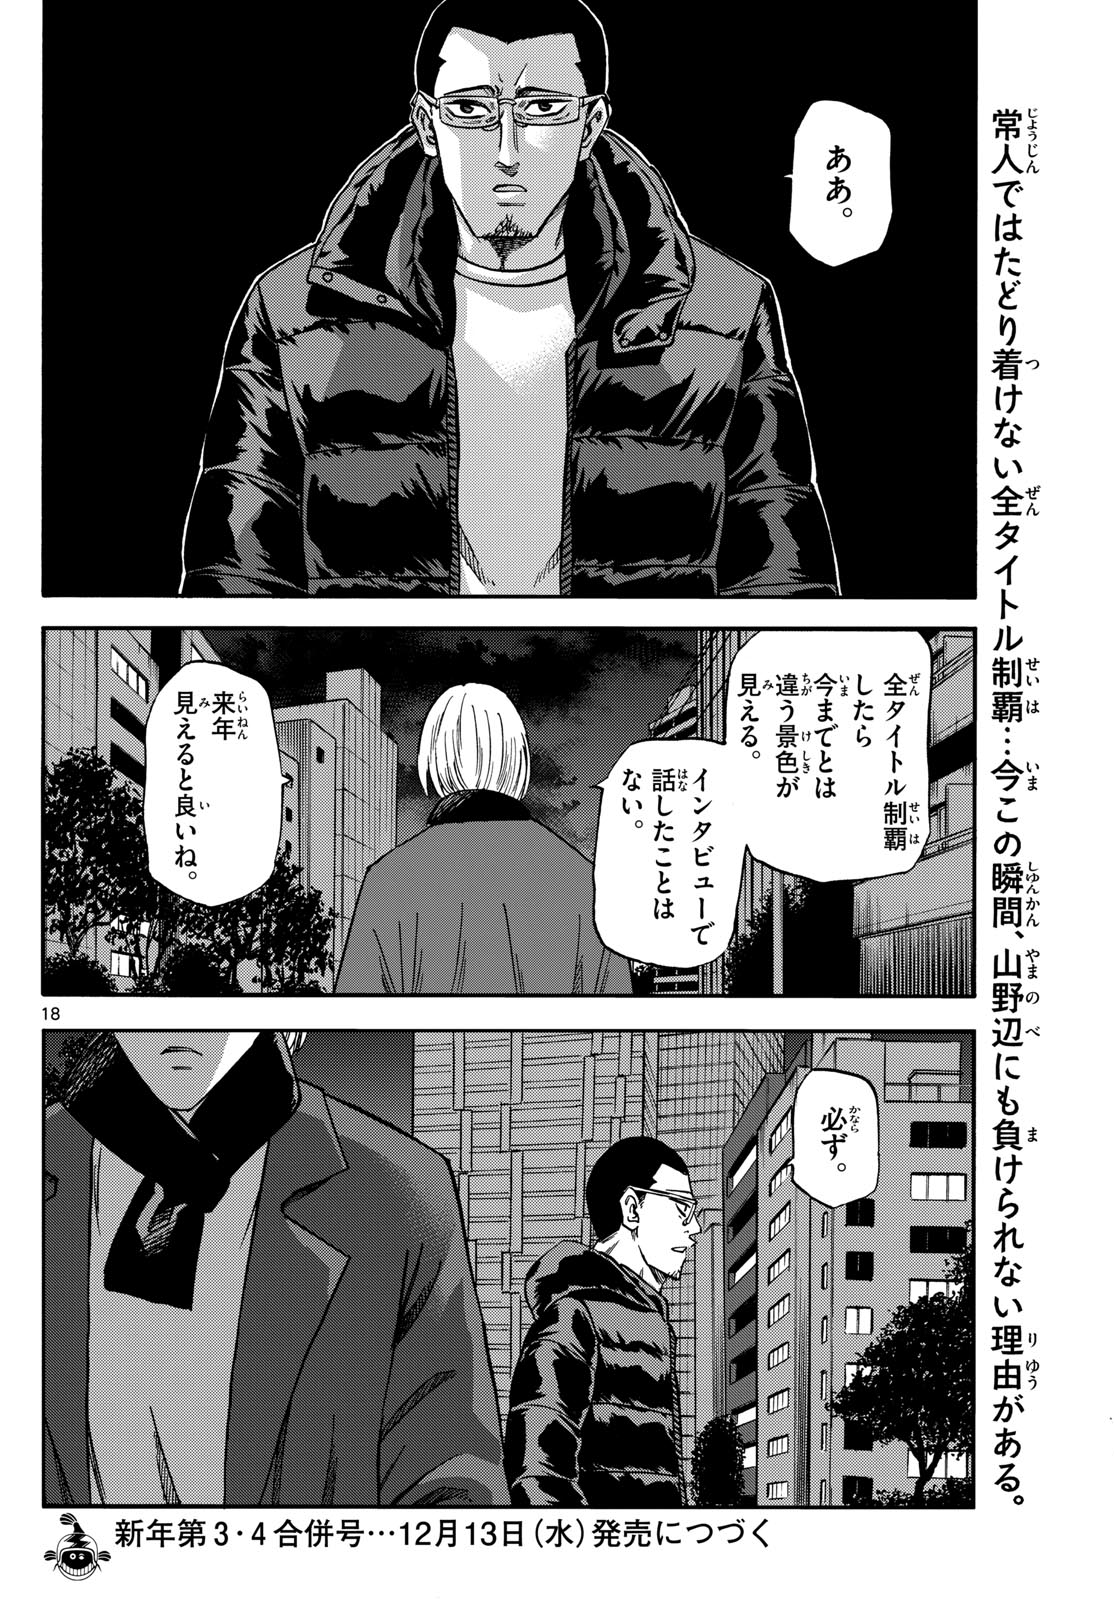 Tatsu to Ichigo - Chapter 171 - Page 18